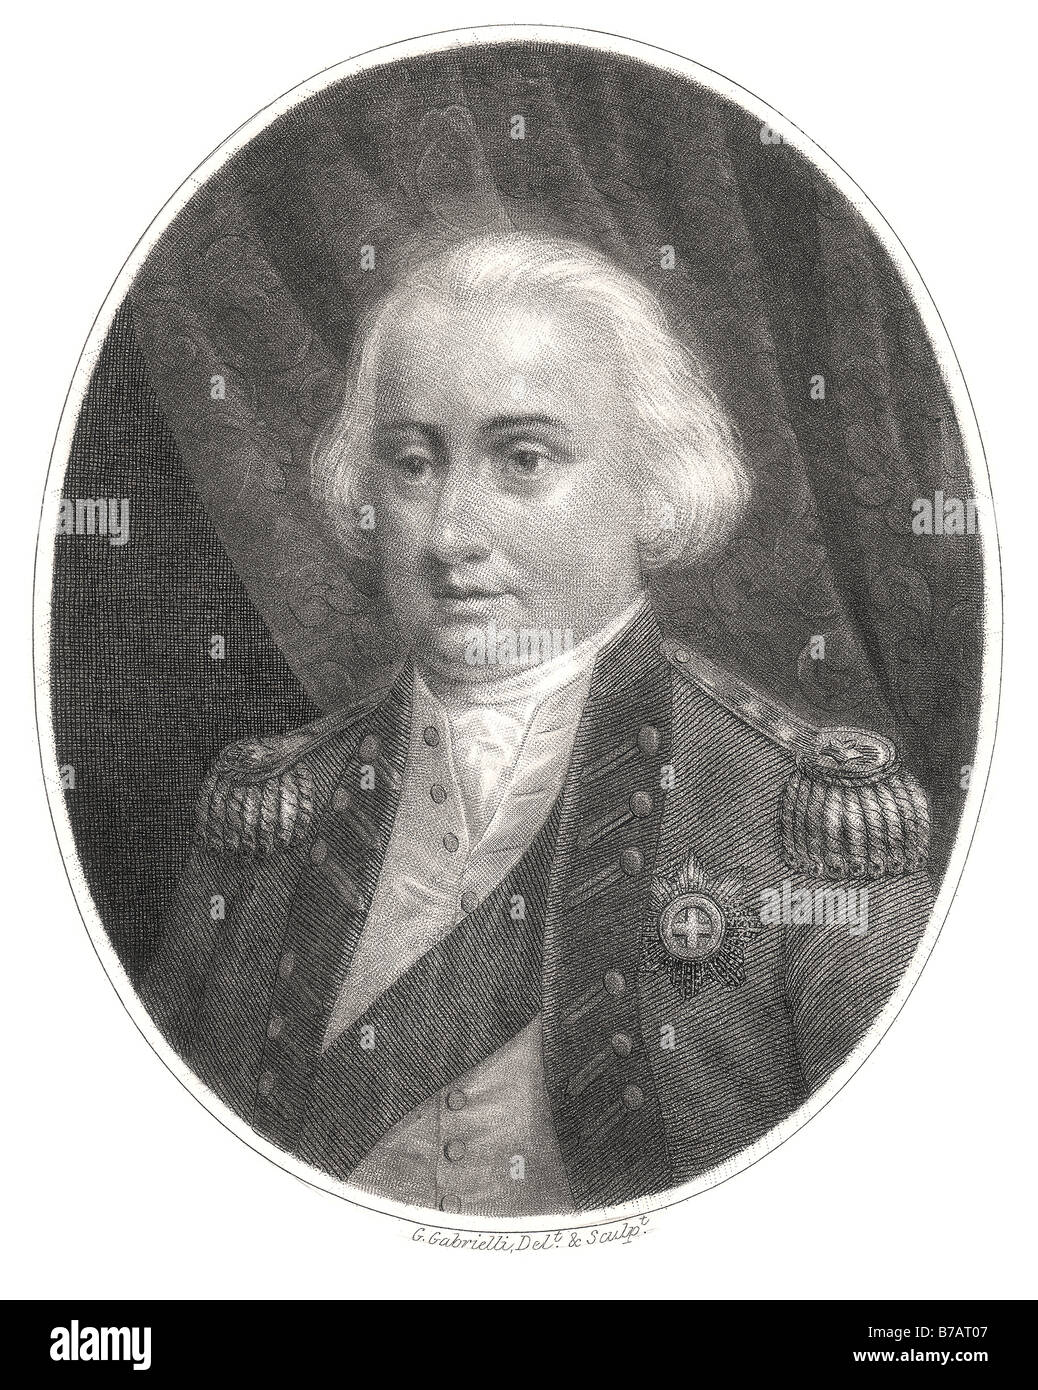 Charles Cornwallis primo marchese Cornwallis 31 Dicembre 1738 - 5 ottobre 1805 ufficiale dell'esercito britannico e amministratore coloniale Foto Stock